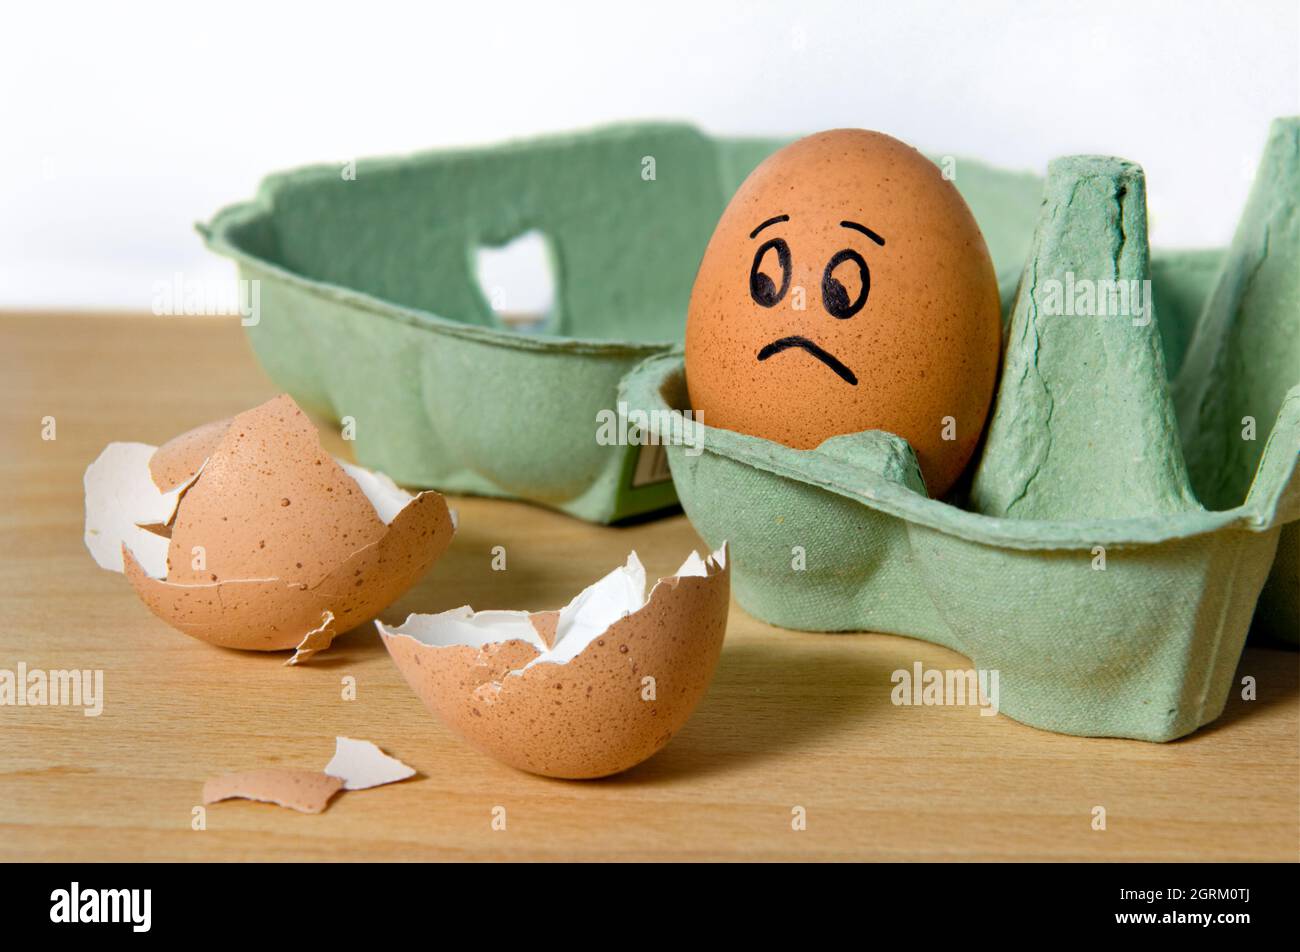 Ungekochte Eier mit einem verängstigten Gesicht, das auf gesprungene Eierschalen schaut und darauf wartet, dass sie geknackt werden Stockfoto